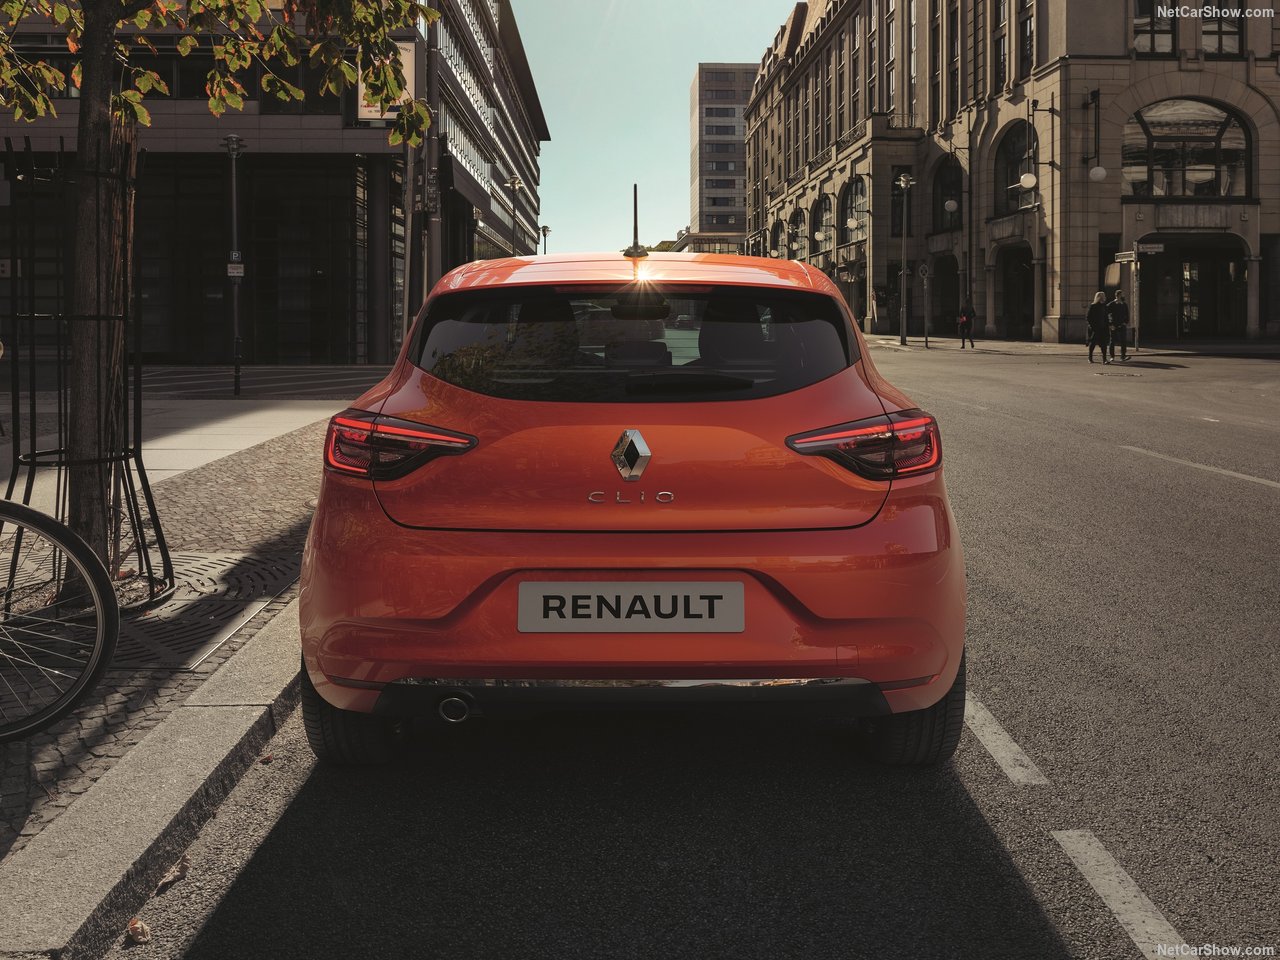 2019 Renault Clio tanıtıldı! Yeni Renault Clio’nun motor ve donanım özellikleri neler?